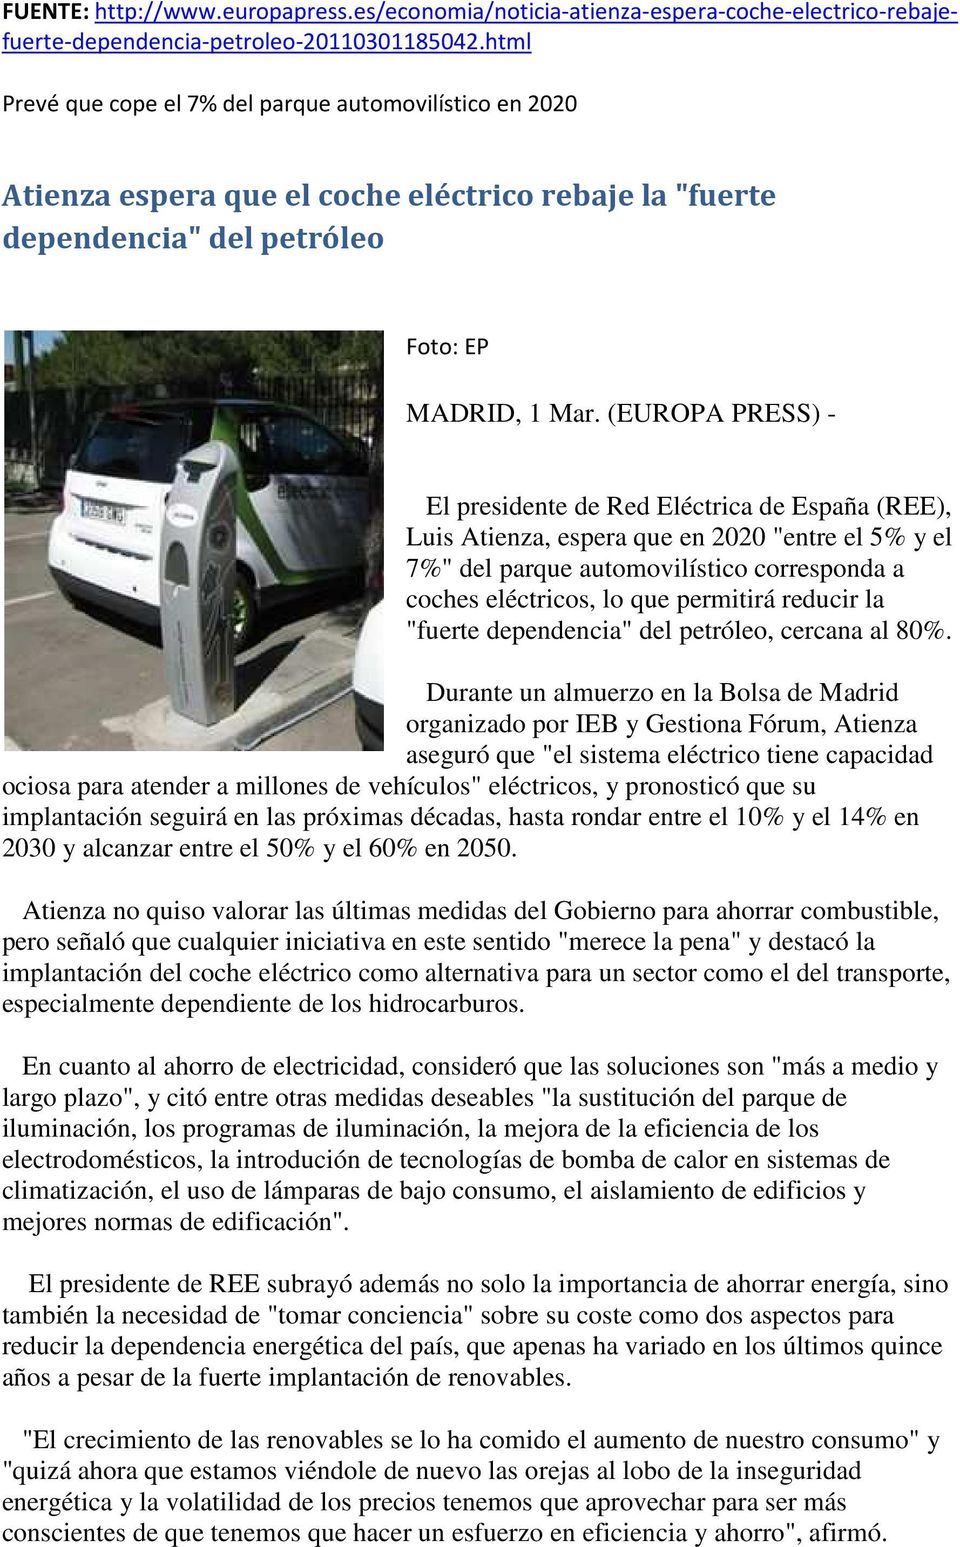 (EUROPA PRESS) - El presidente de Red Eléctrica de España (REE), Luis Atienza, espera que en 2020 "entre el 5% y el 7%" del parque automovilístico corresponda a coches eléctricos, lo que permitirá